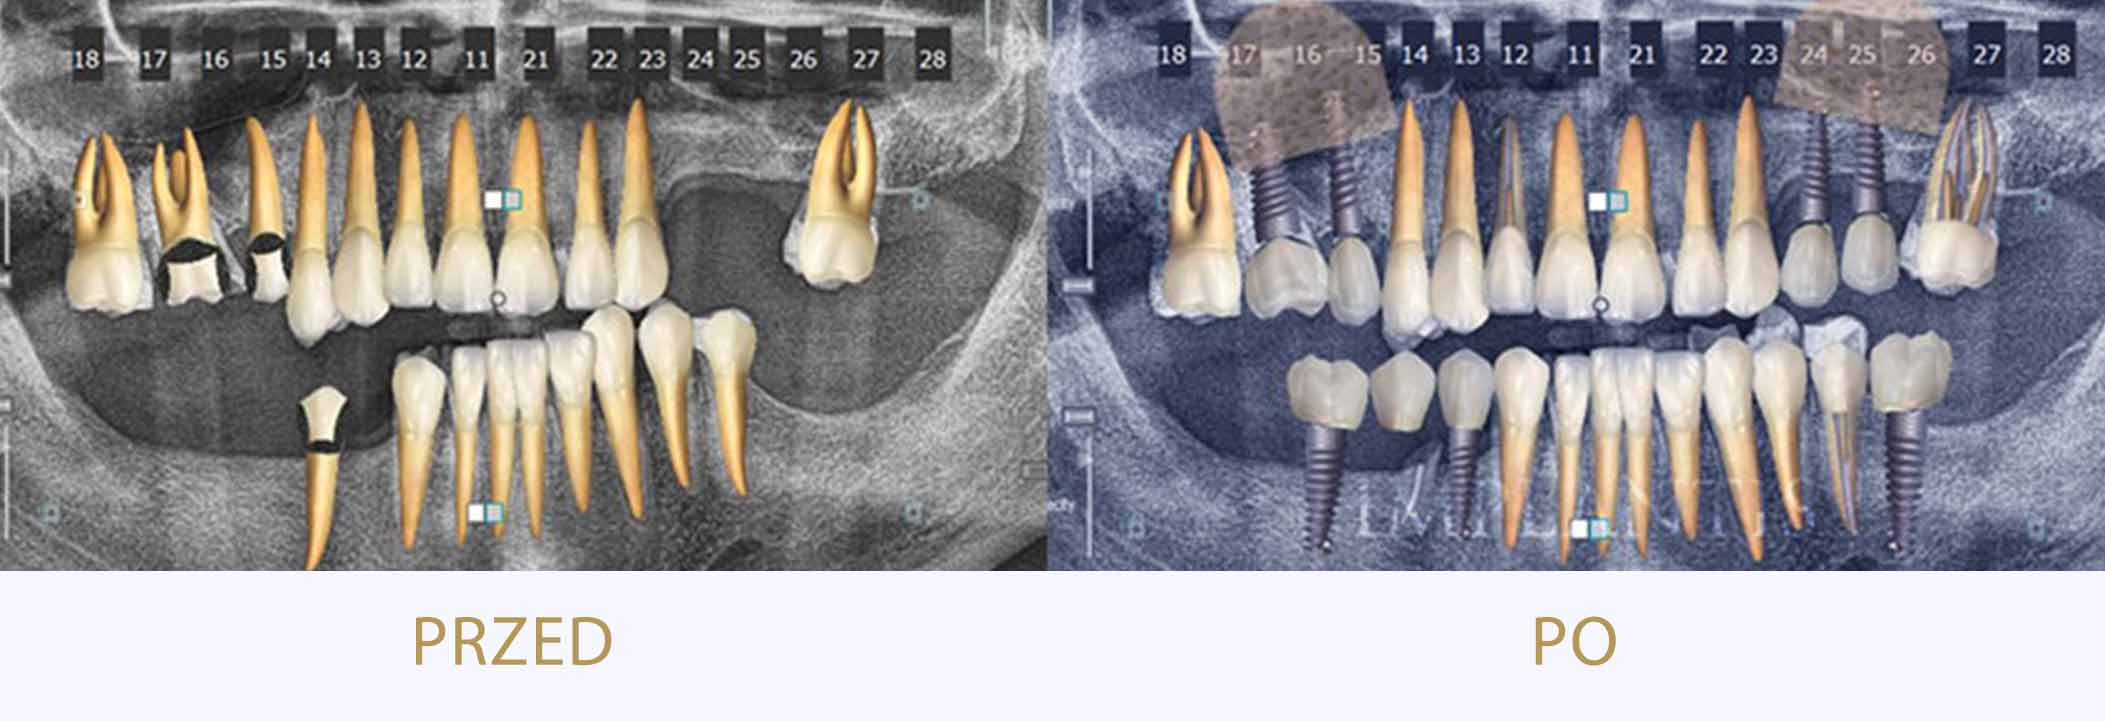 zęby przed i po leczeniu chirurgicznym